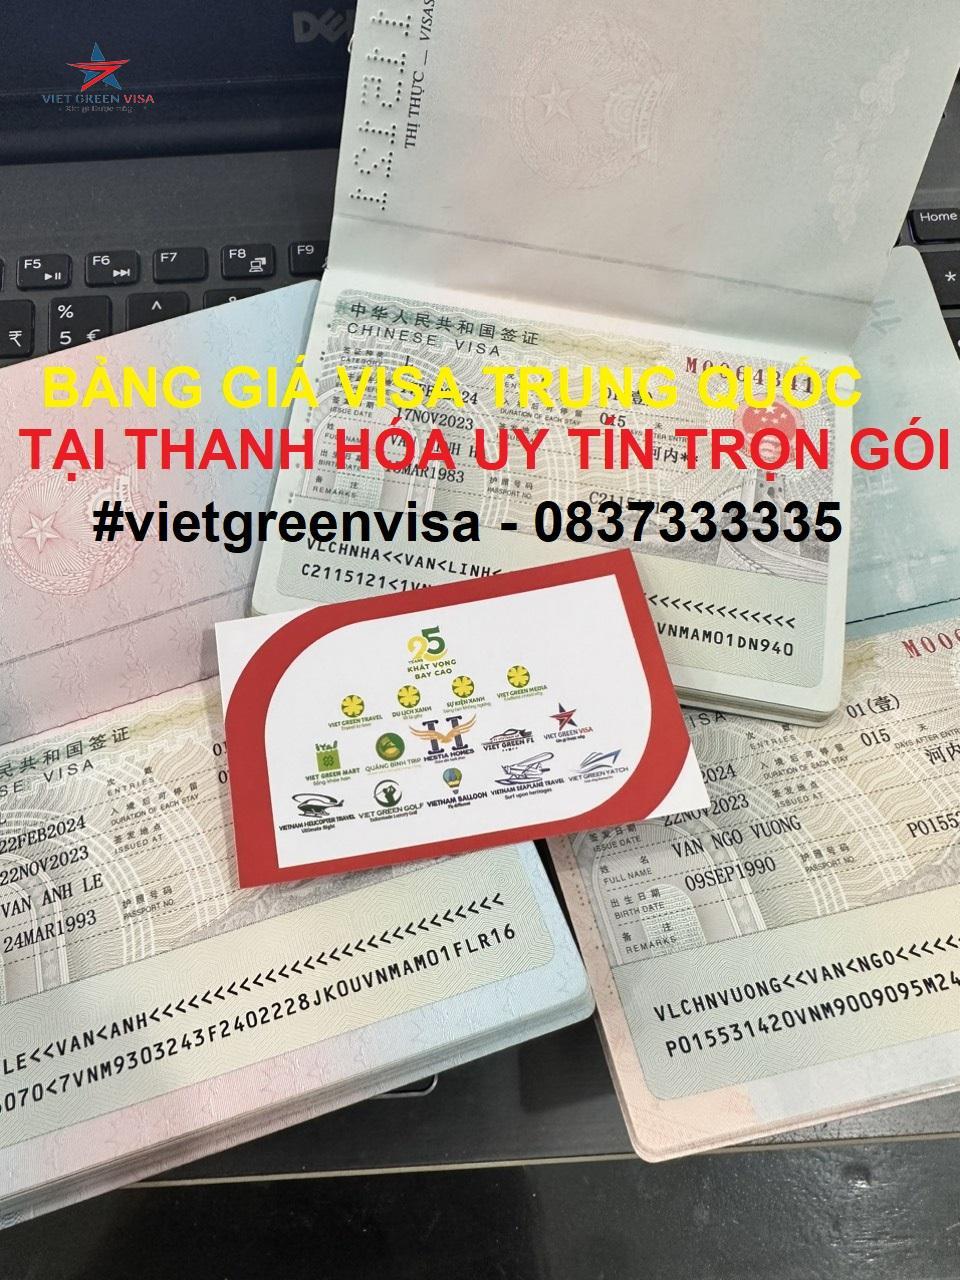 Dịch vụ xin visa Trung Quốc tại Thanh Hóa uy tín trọn gói